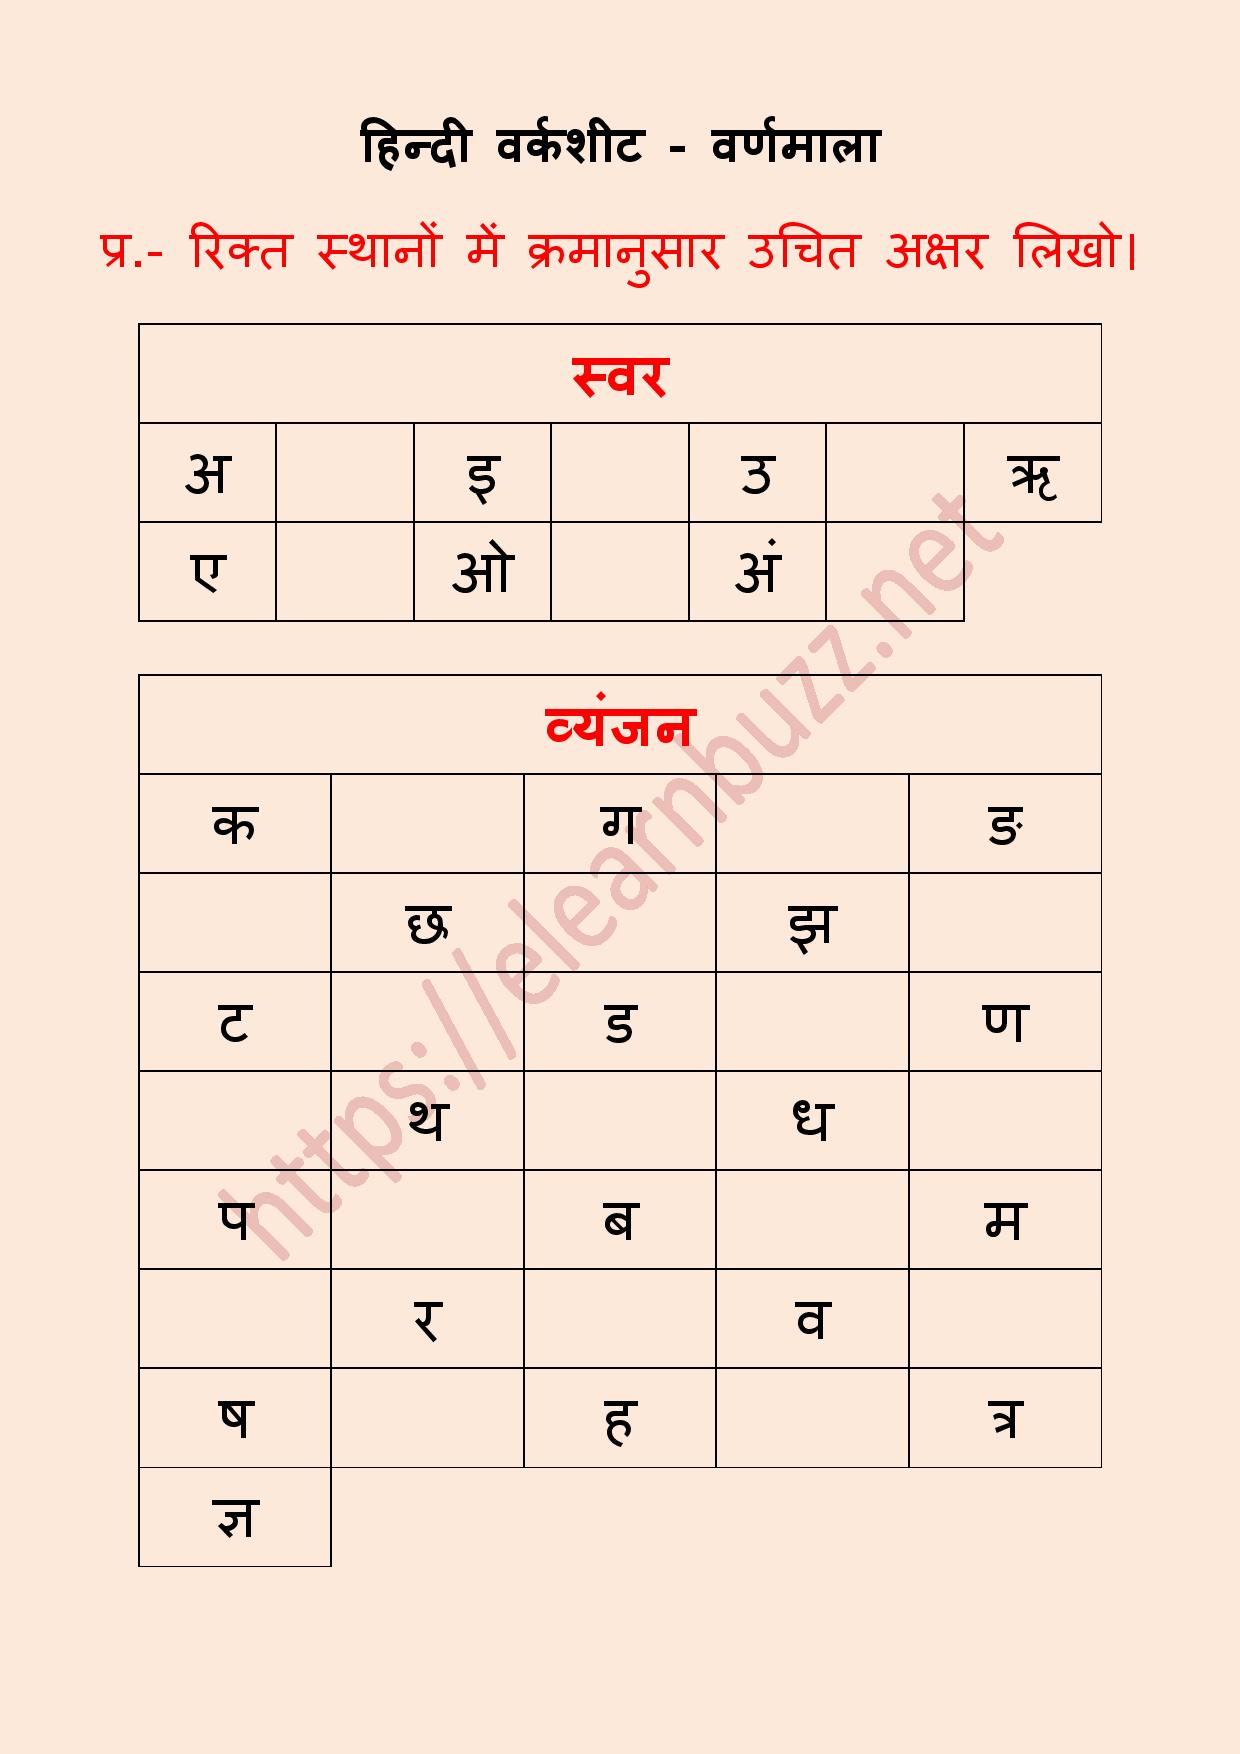 21 Hindi Varnamala Ideas Hindi Worksheets Learn Hindi Hindi Images